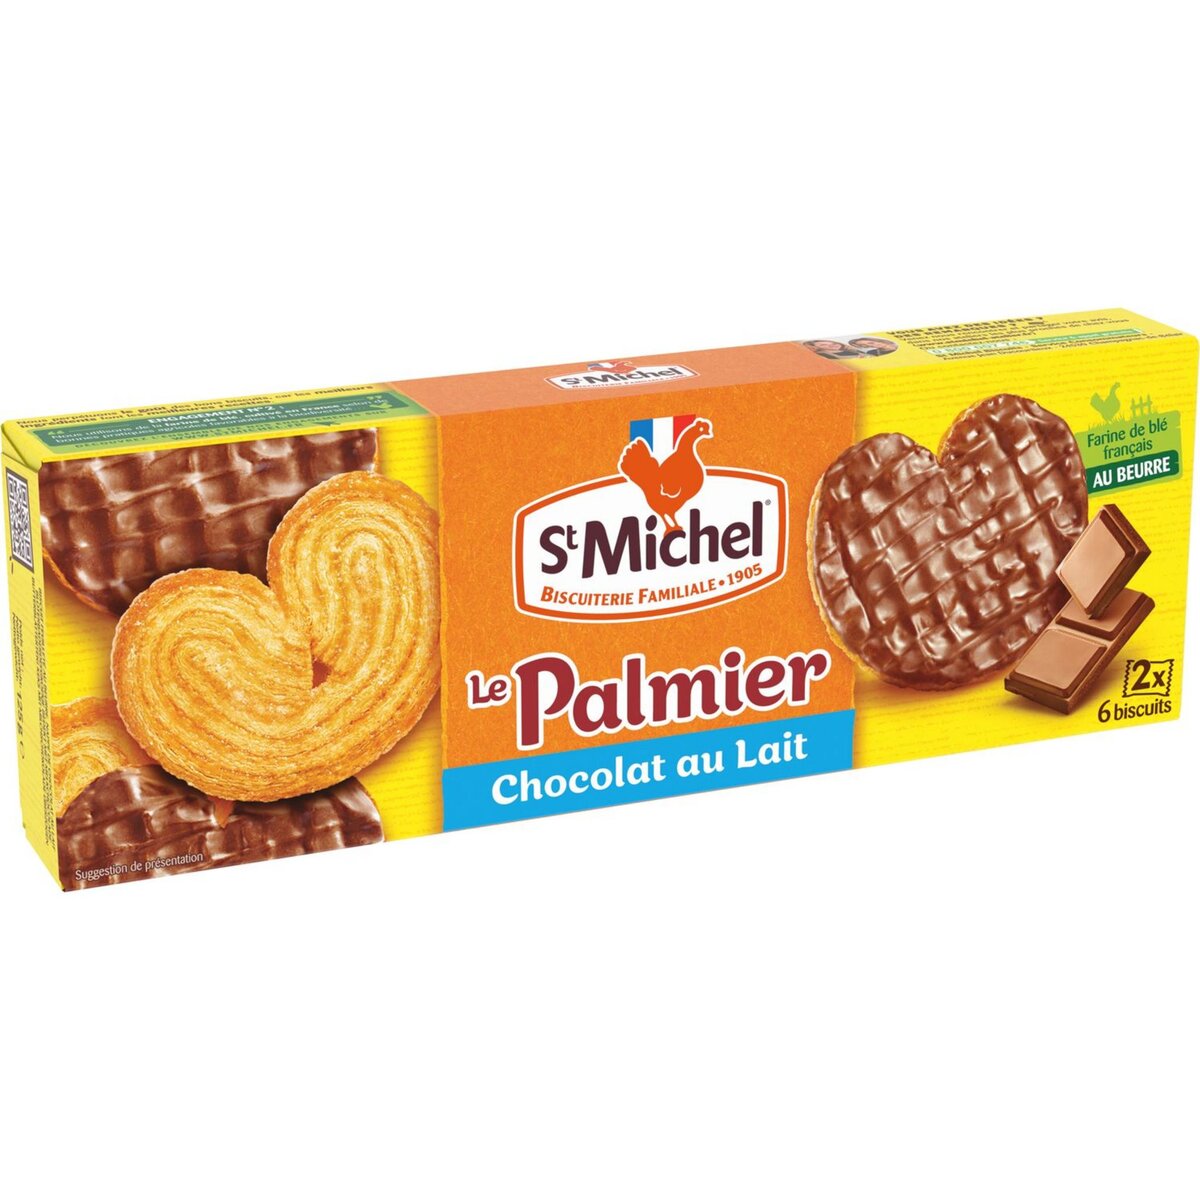 ST MICHEL Palmiers biscuits nappés de chocolat au lait 2x6 biscuits 100g